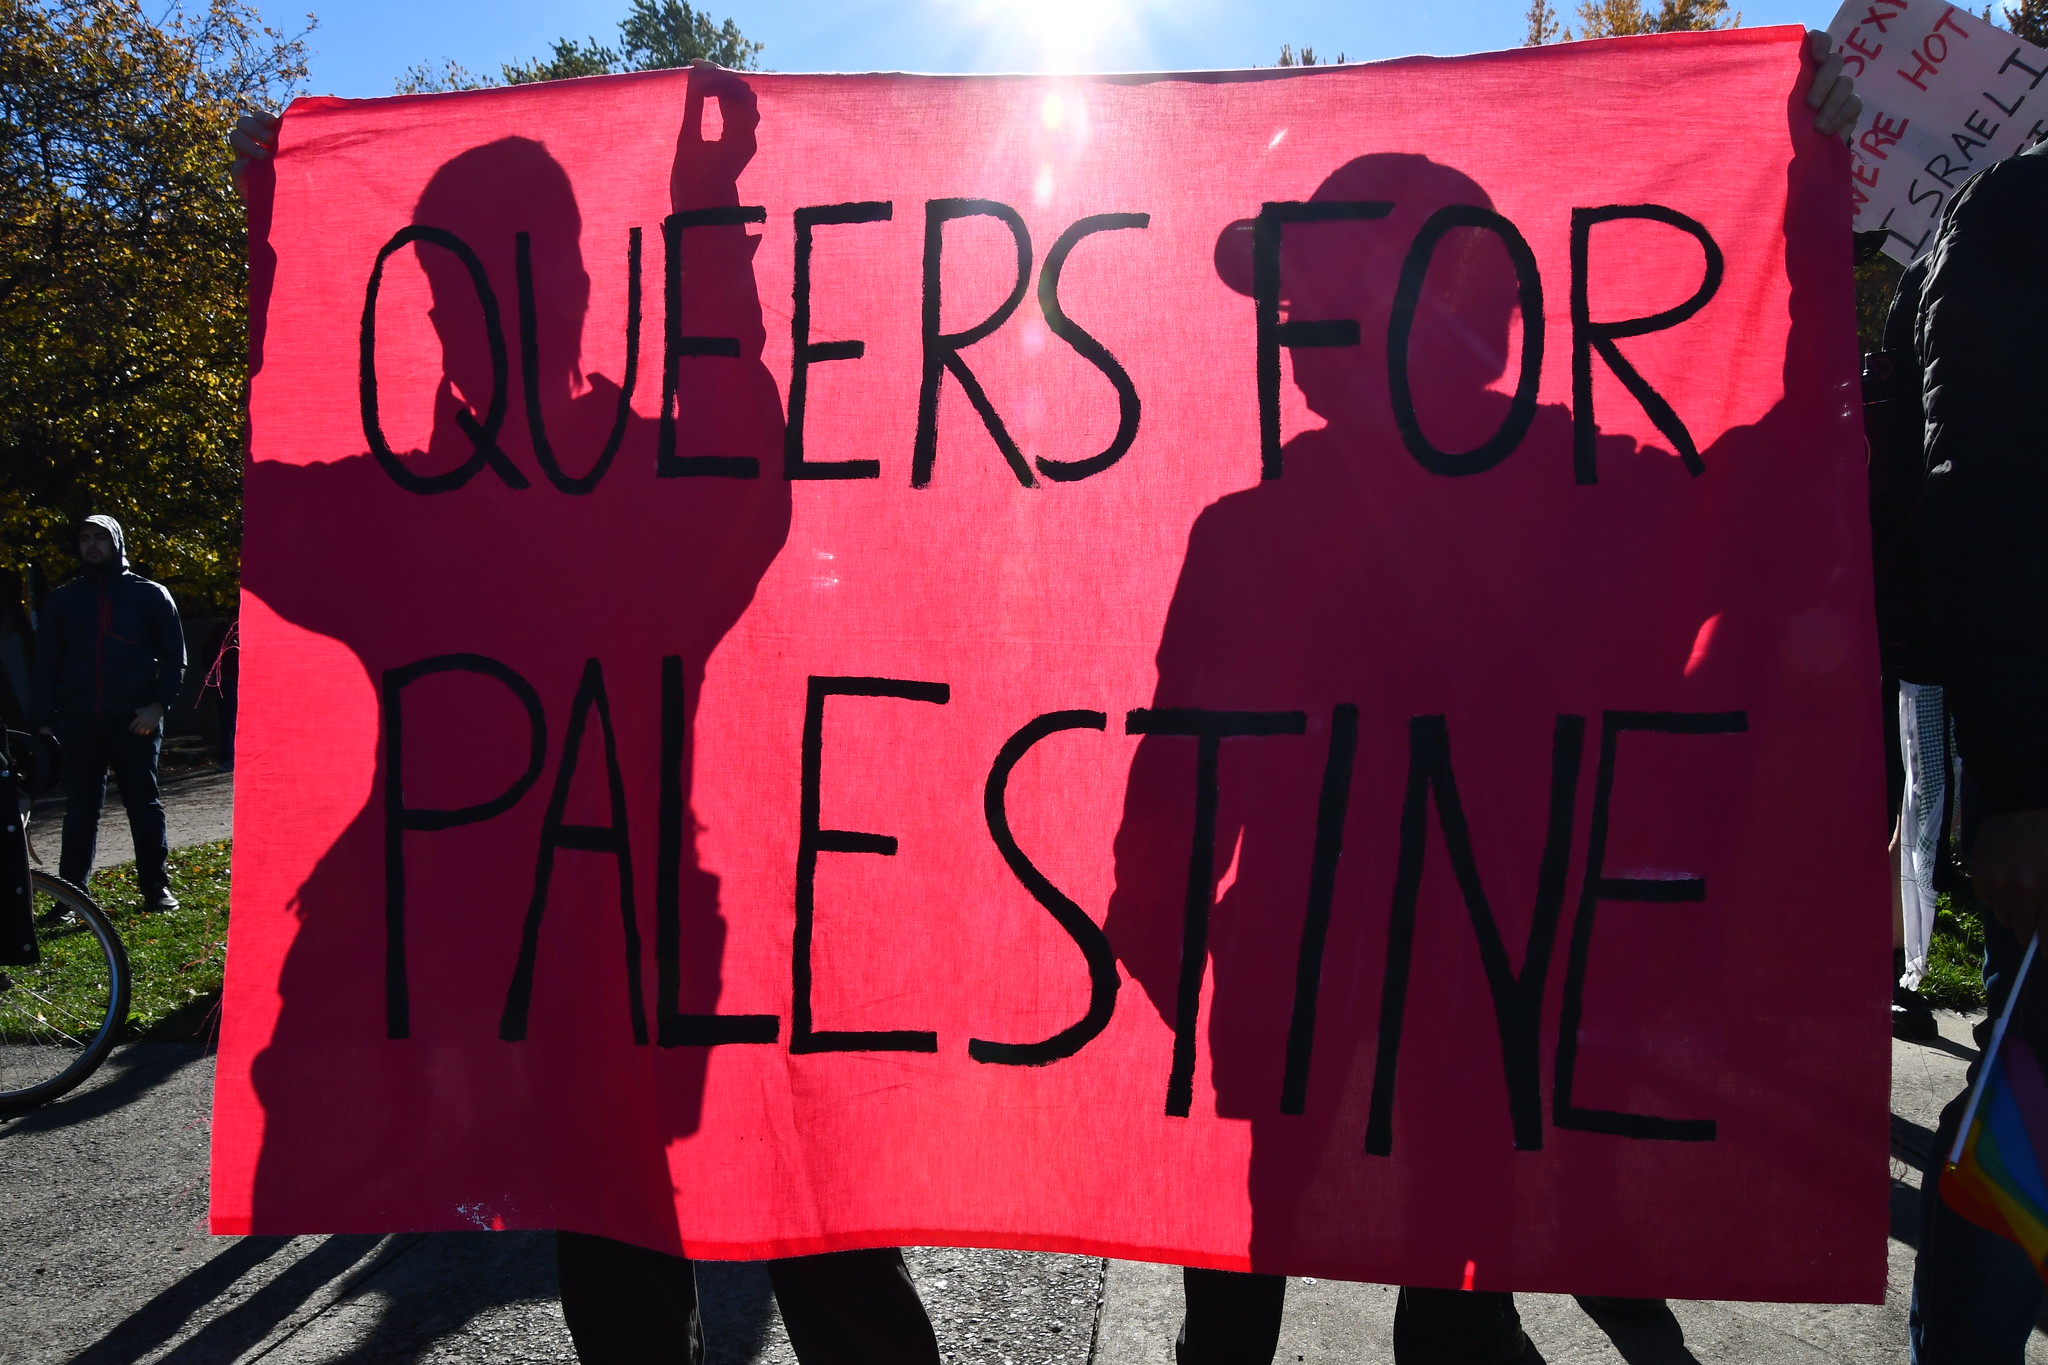 Deux personnes tenant une bannière rose sur laquelle il est écrit "queers for palestine"